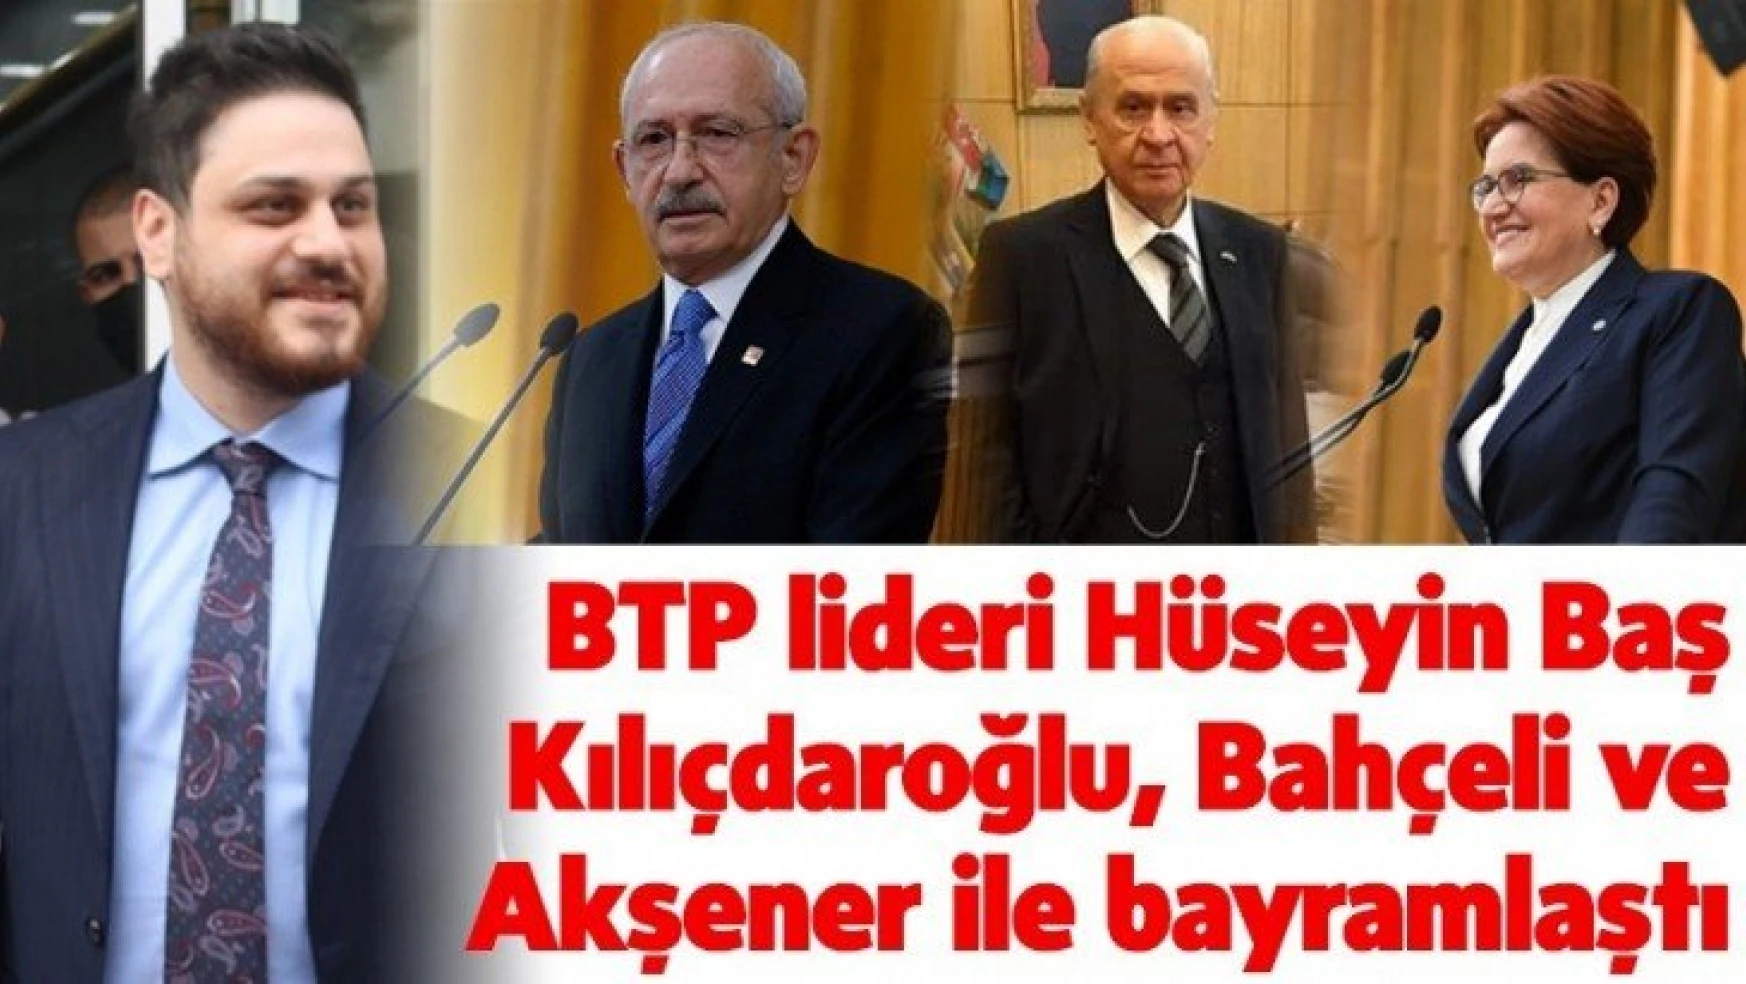 BTP lideri Hüseyin Baş Bahçeli, Kılıçdaroğlu,  ve Akşener ile bayramlaştı